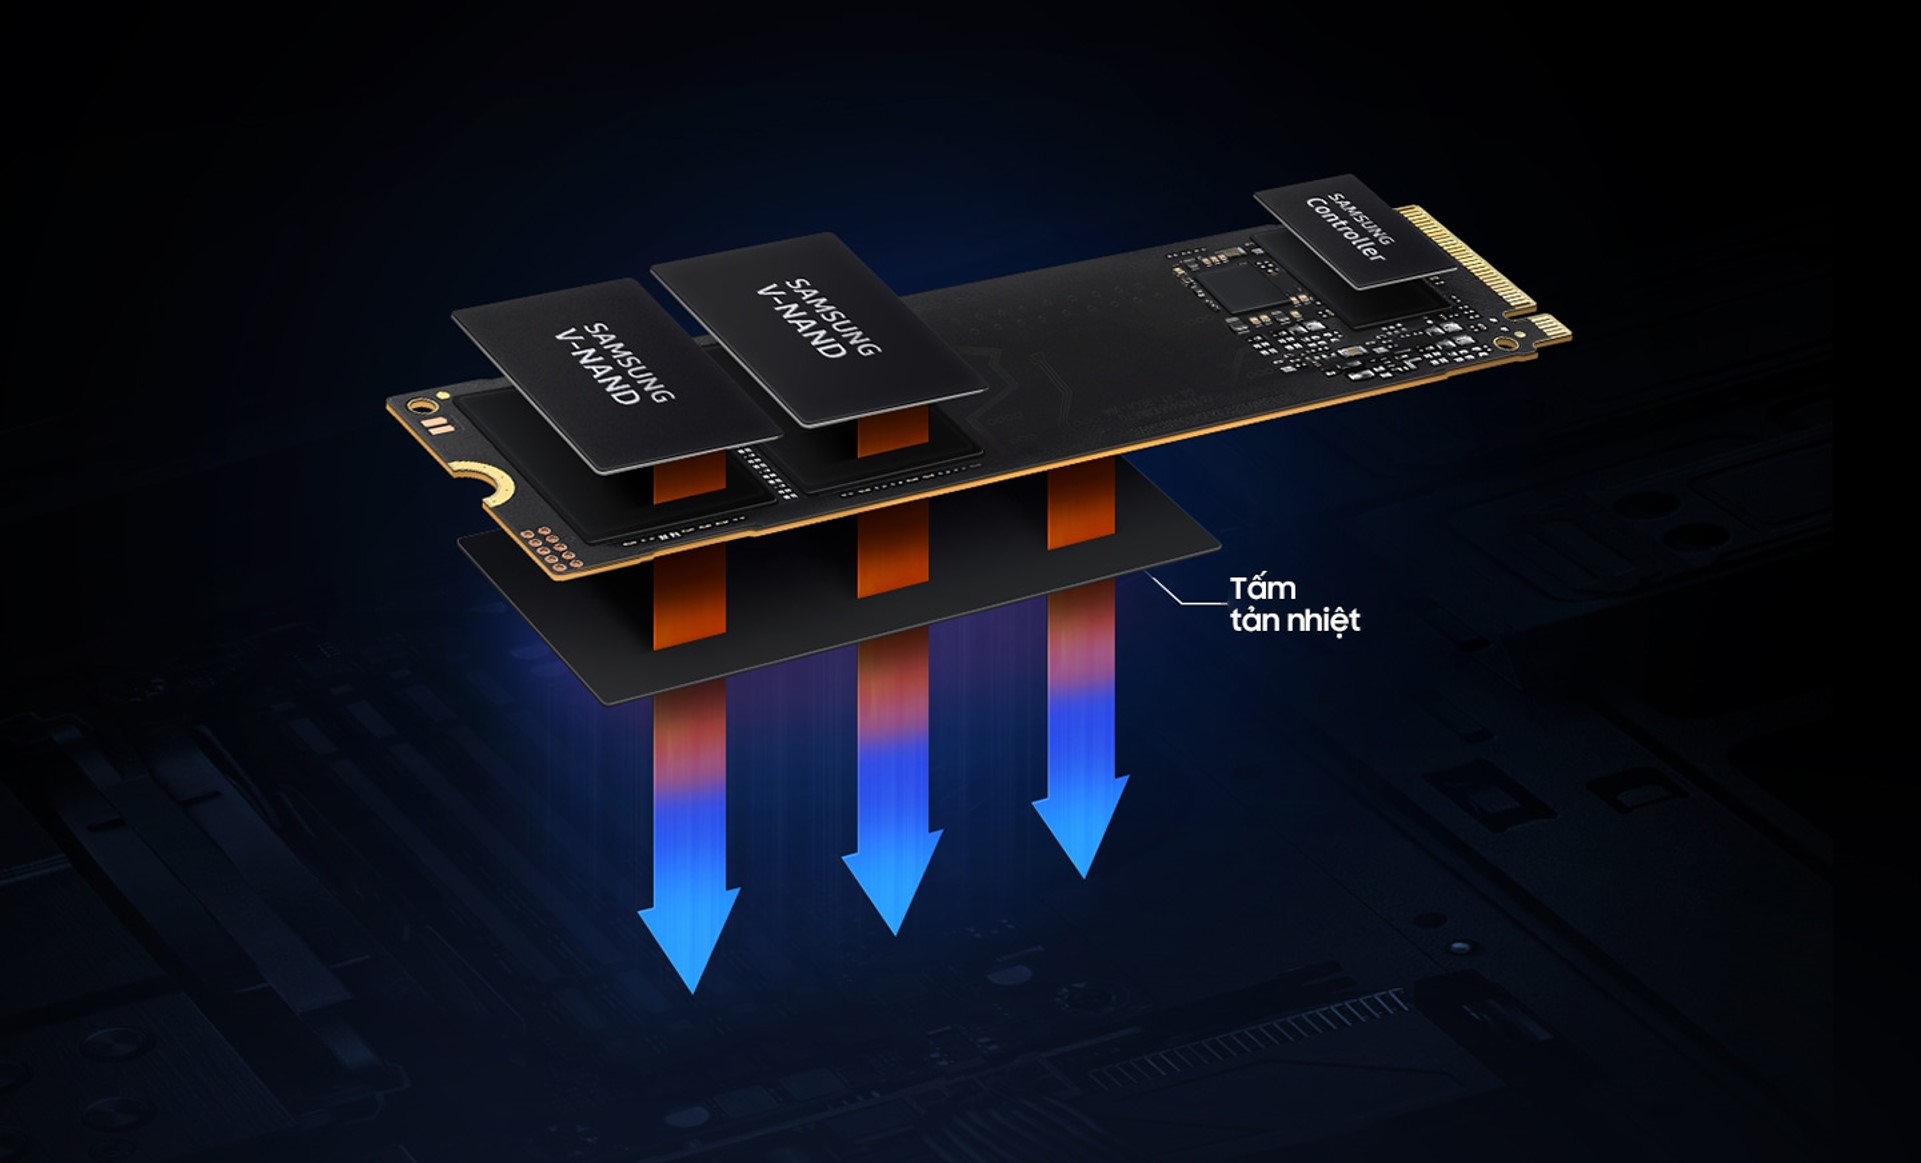 Ổ cứng SSD 990 EVO giúp nâng cao hiệu suất gaming, kinh doanh và làm việc - 990EVO 00 KV PC 002